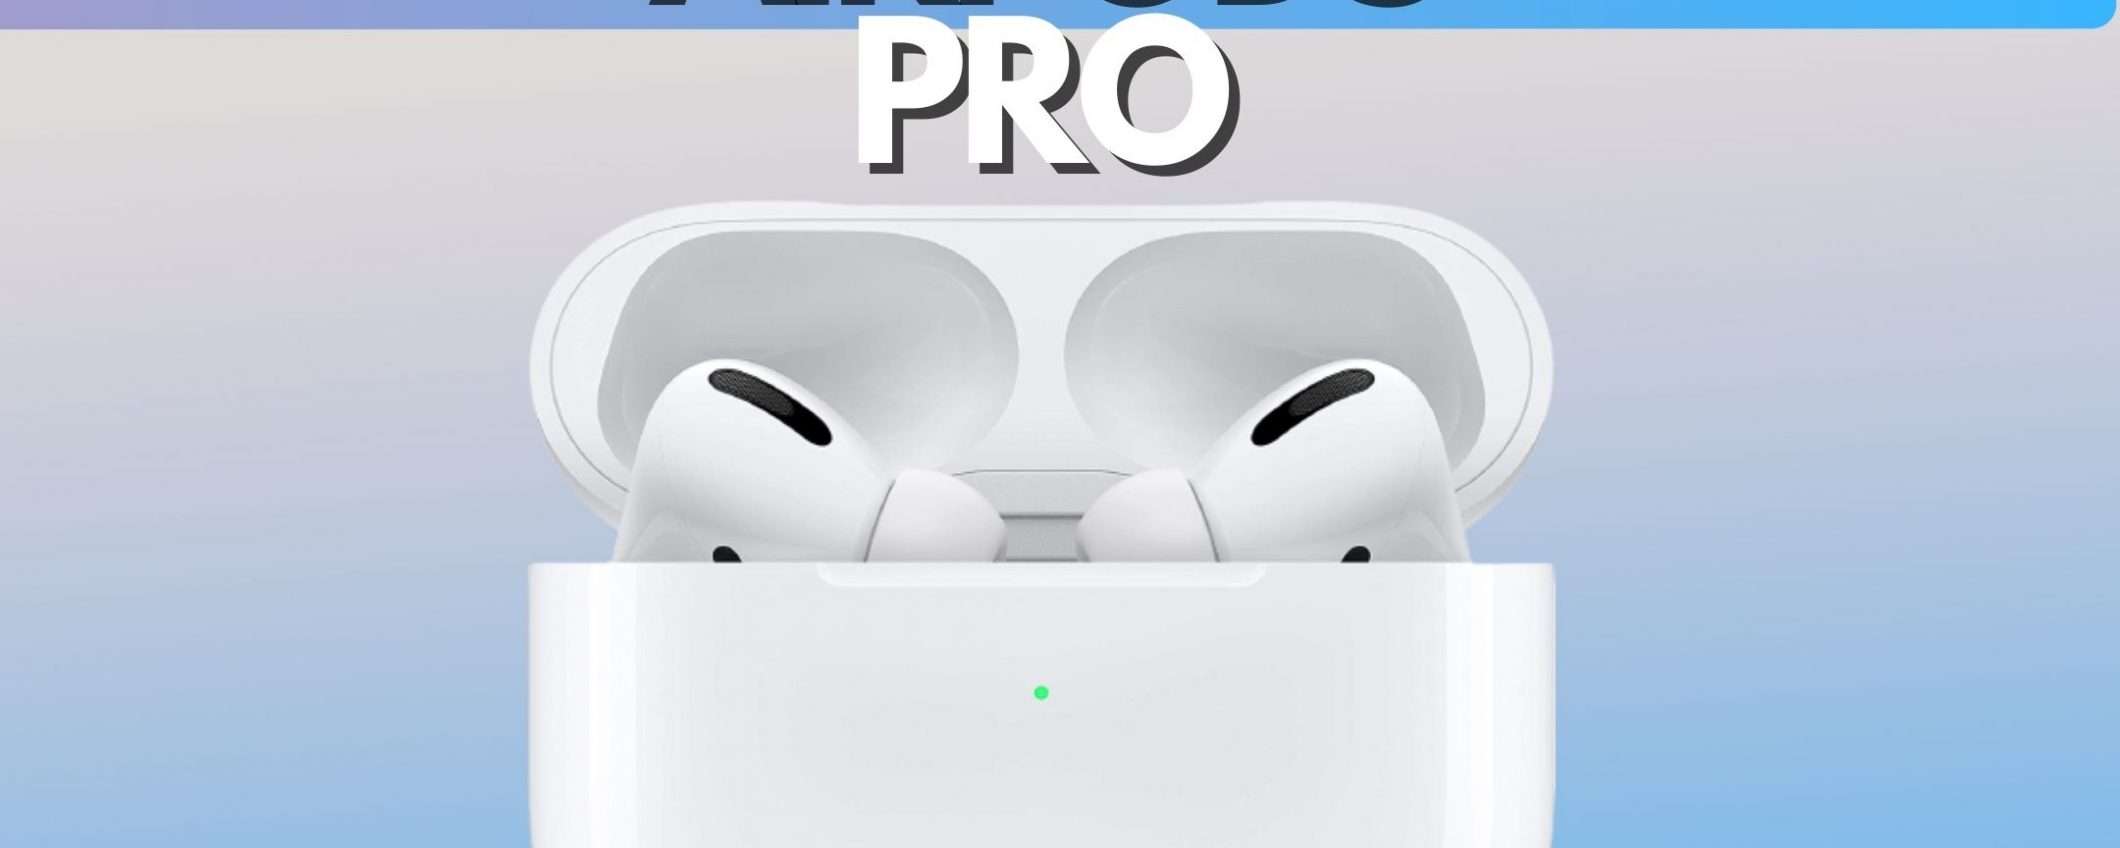 Apple AirPods Pro in offerta con RIBASSO del 29%